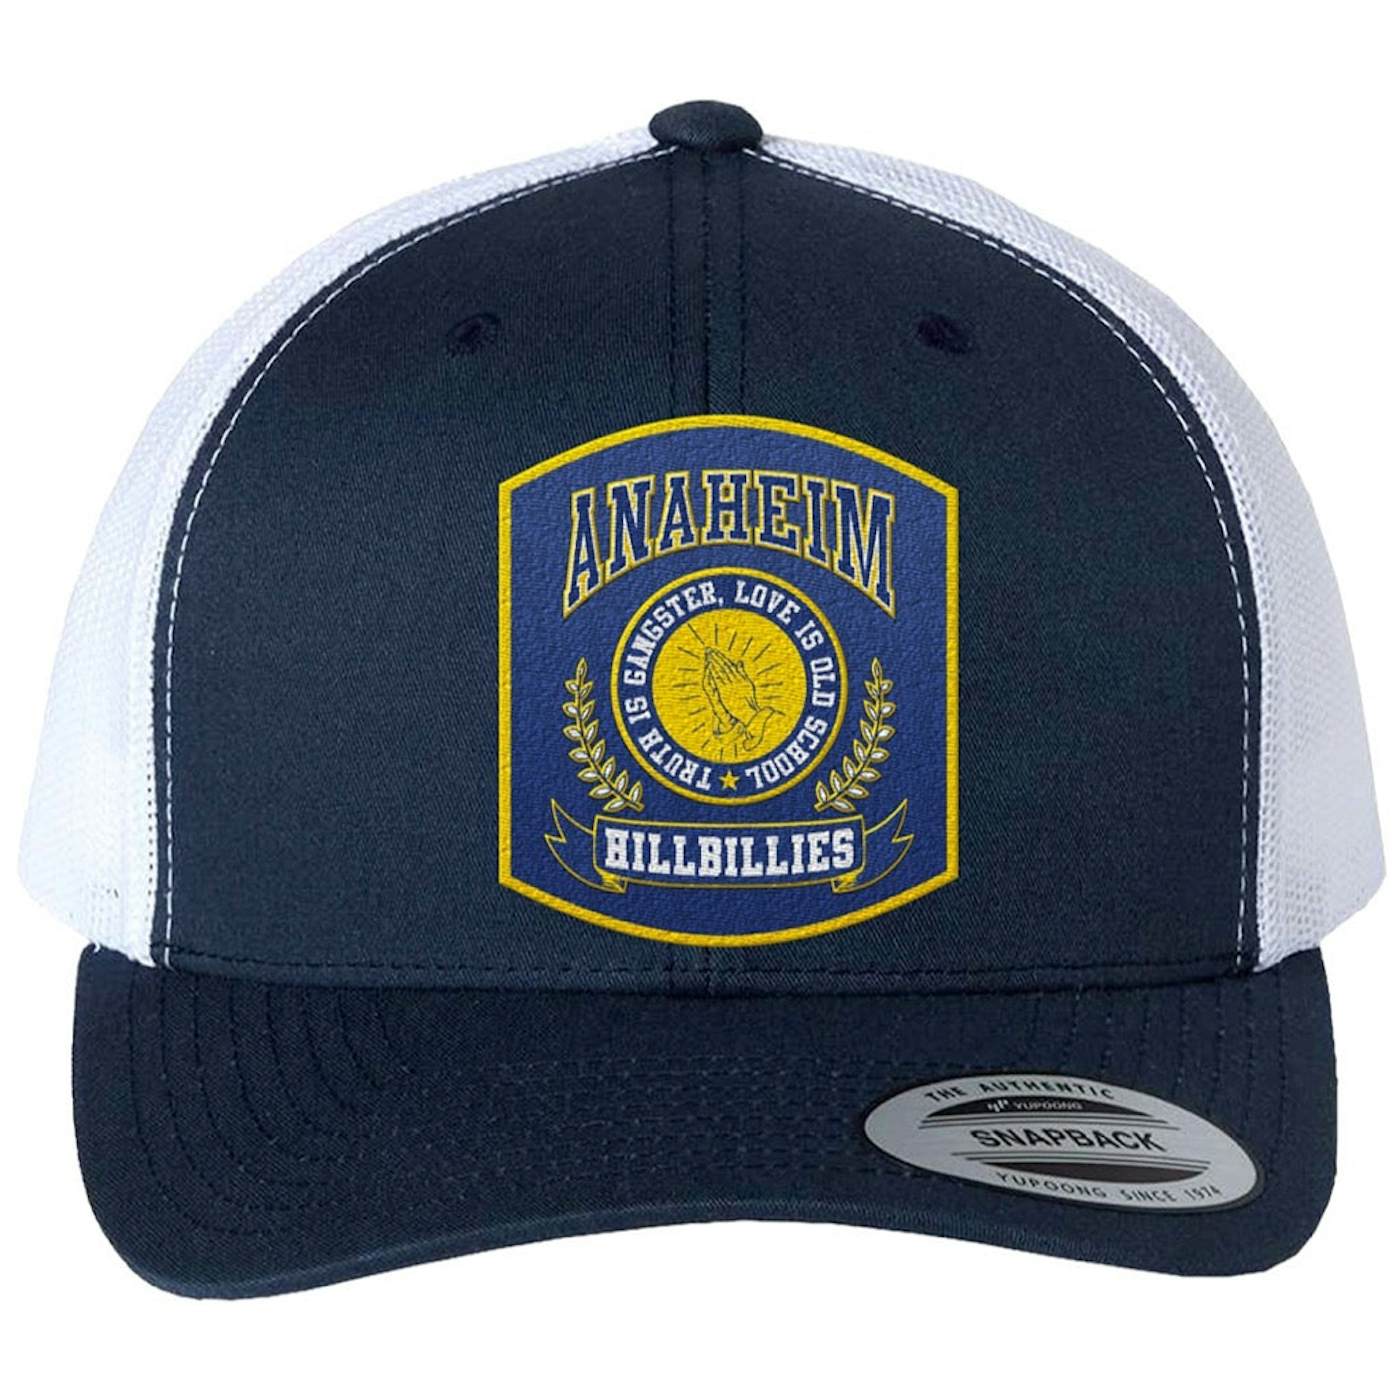 Gwen Stefani Anaheim Hillbillies™ Trucker Hat